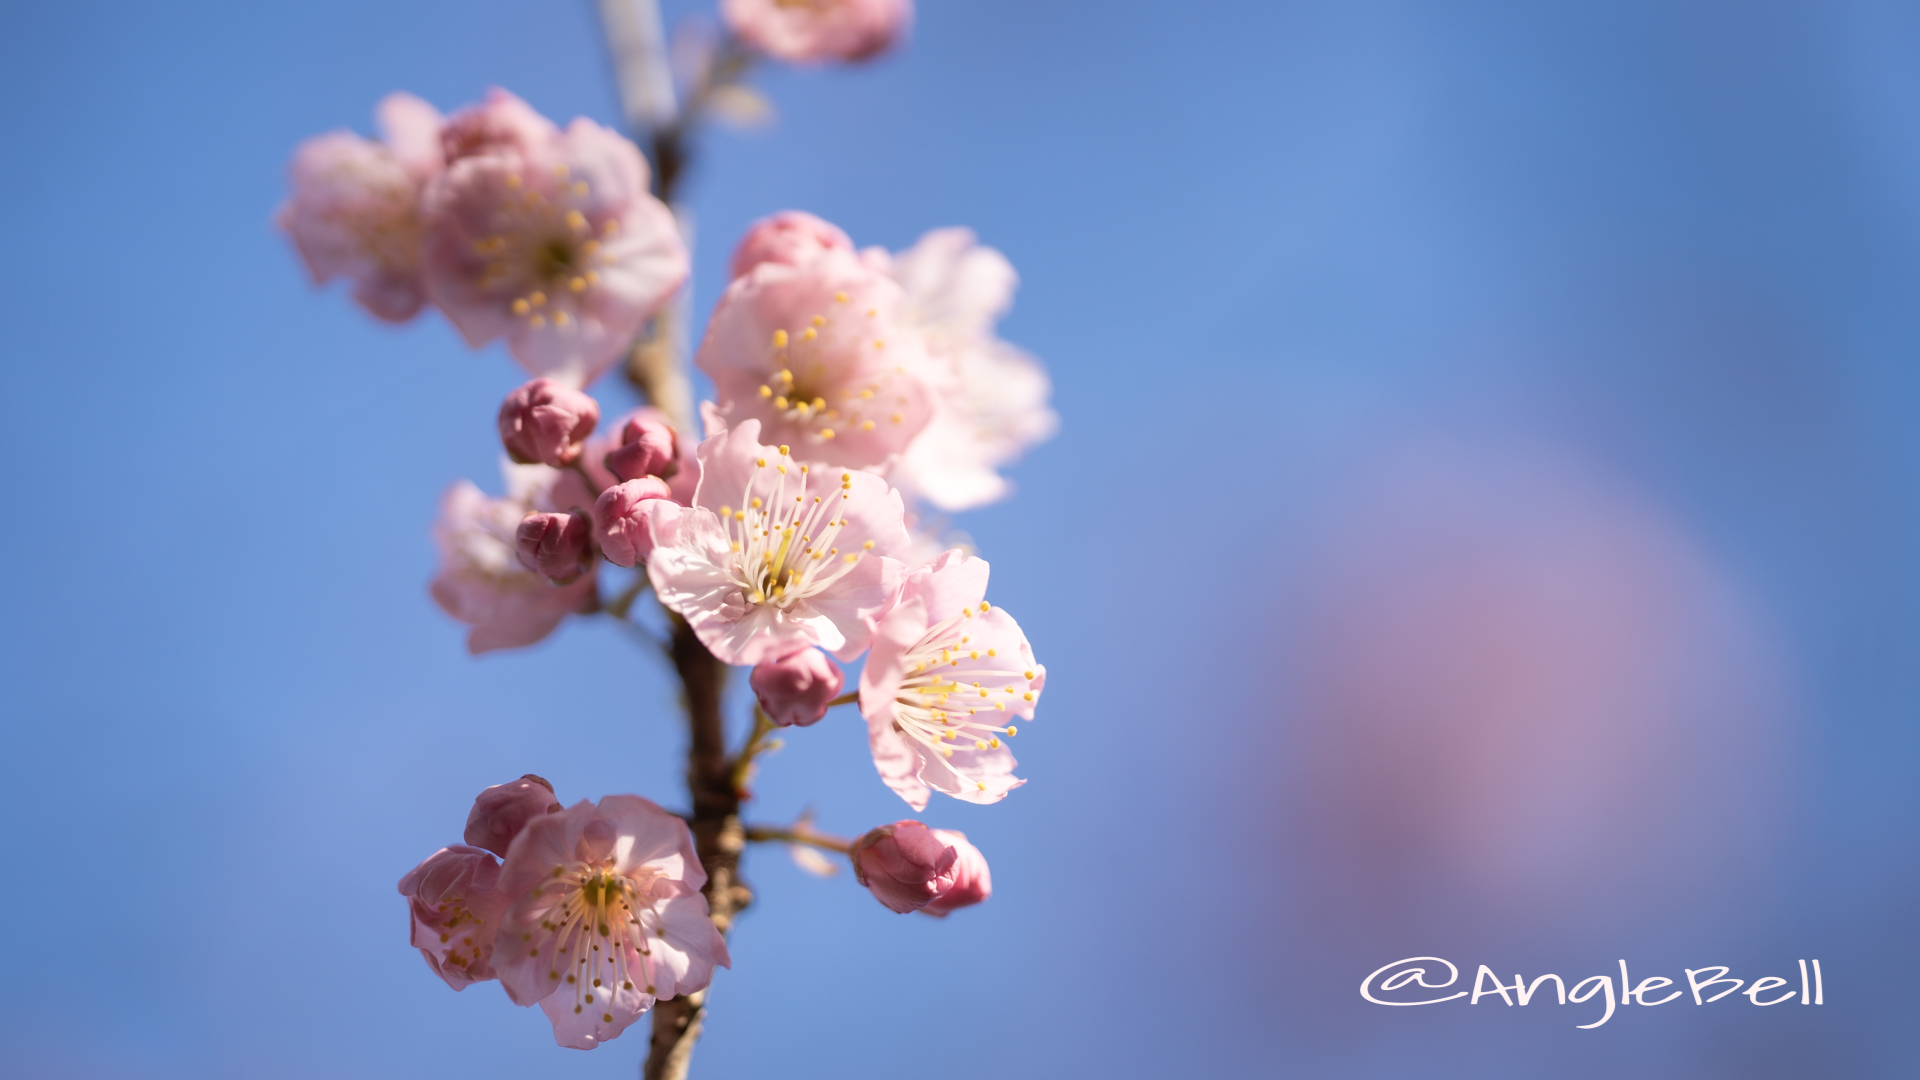 ツバキカンザクラ 椿寒桜